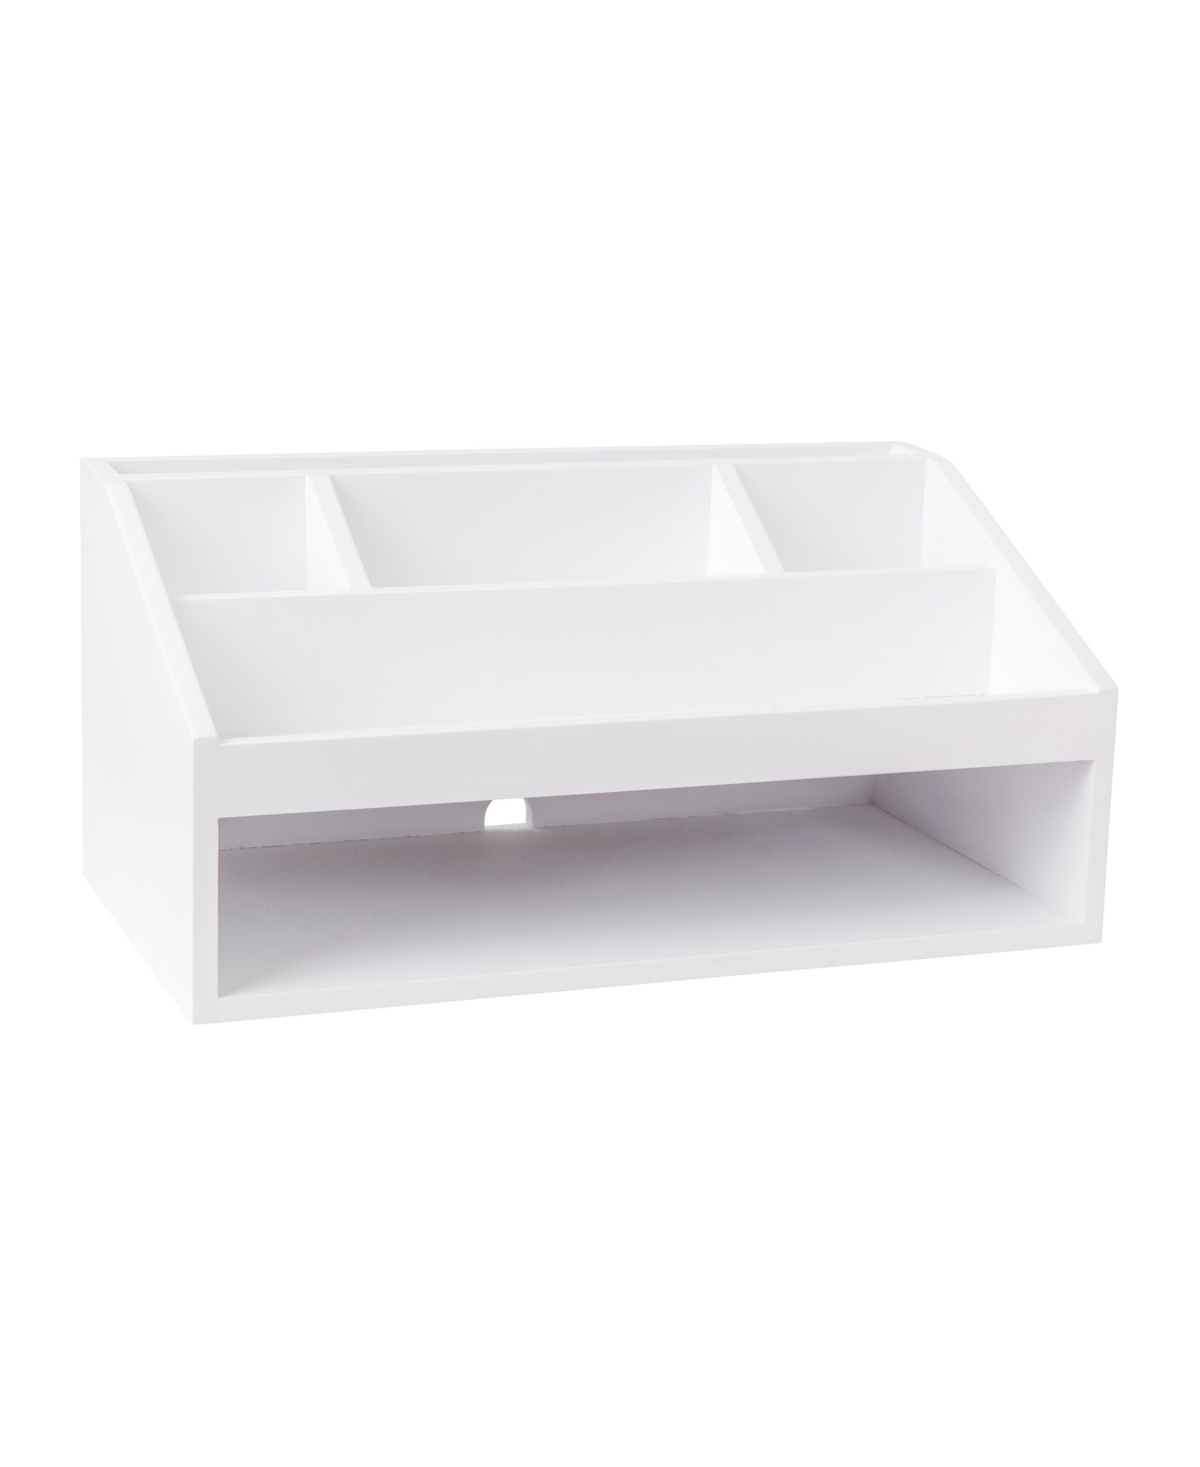 Martha Stewart Weston Wooden Desktop Organizer With Open Lower Storage Compartment, Engineered Wood Multipurpose St In White